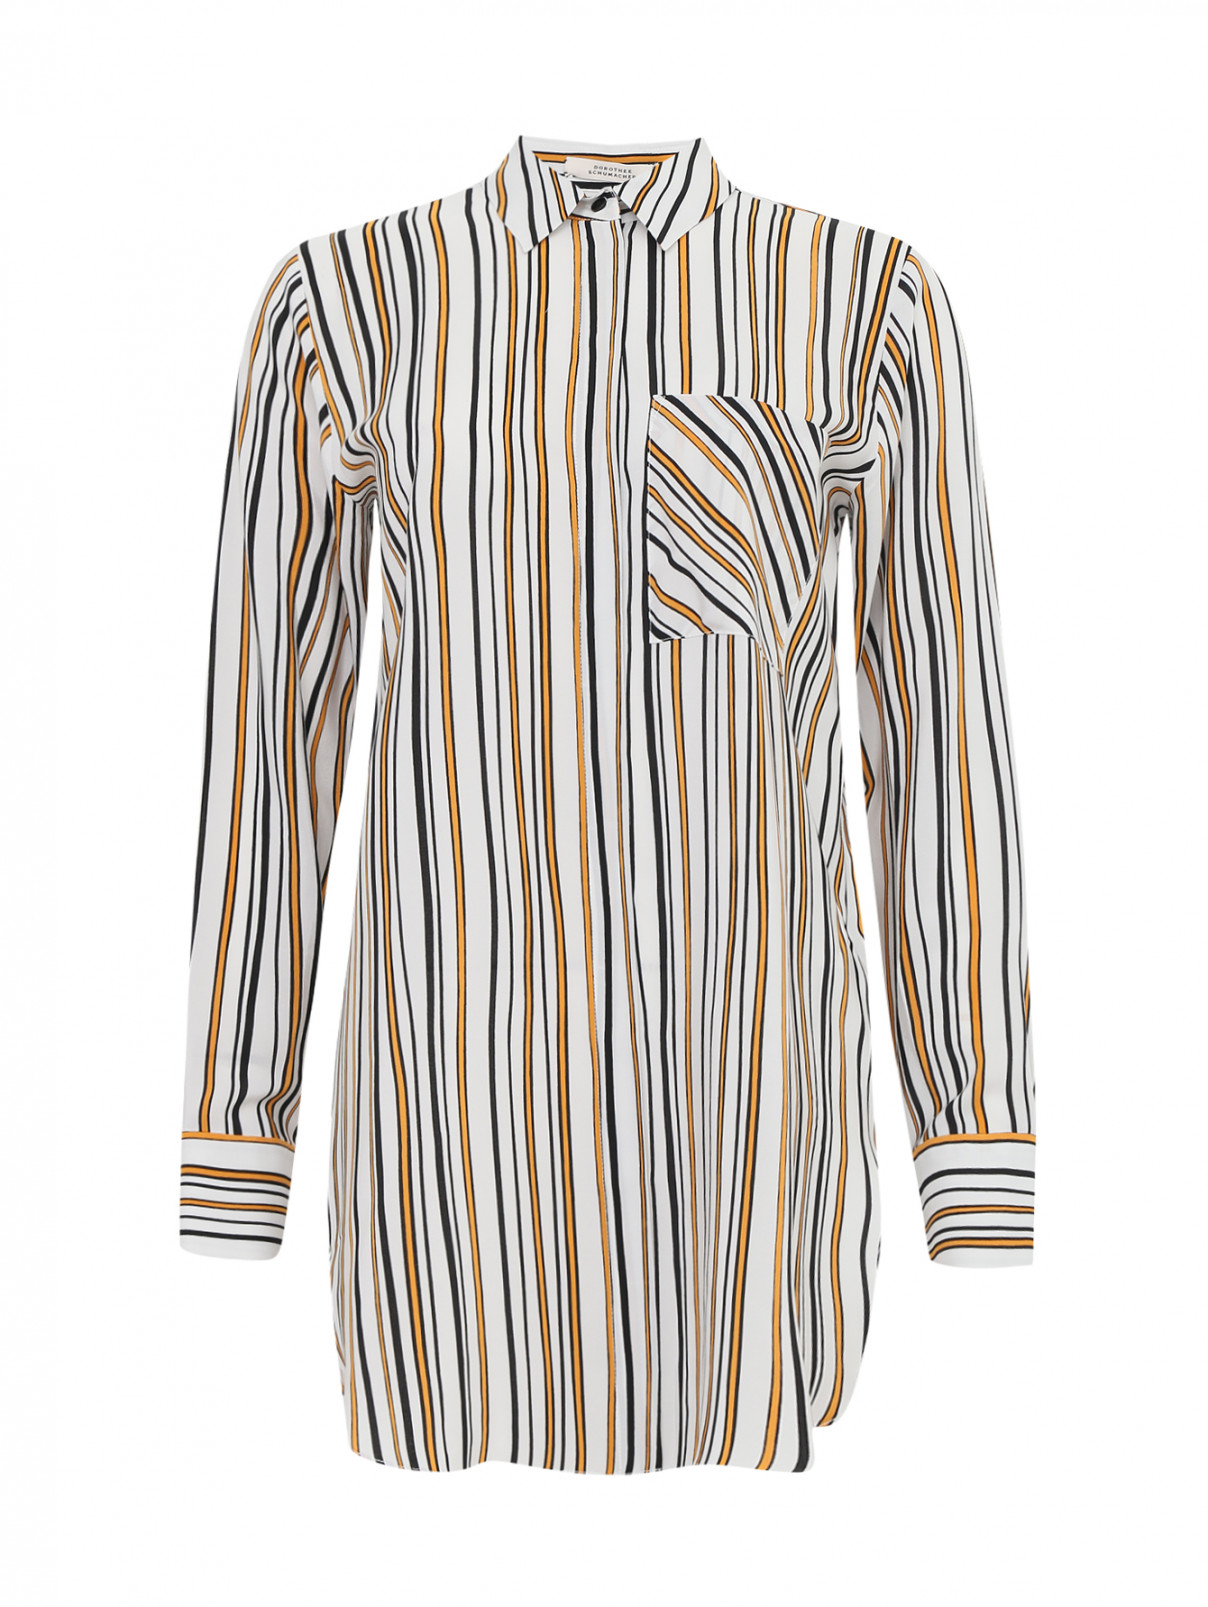 Удлиненная блуза из шелка с узором "полоска" Dorothee Schumacher  –  Общий вид  – Цвет:  Узор